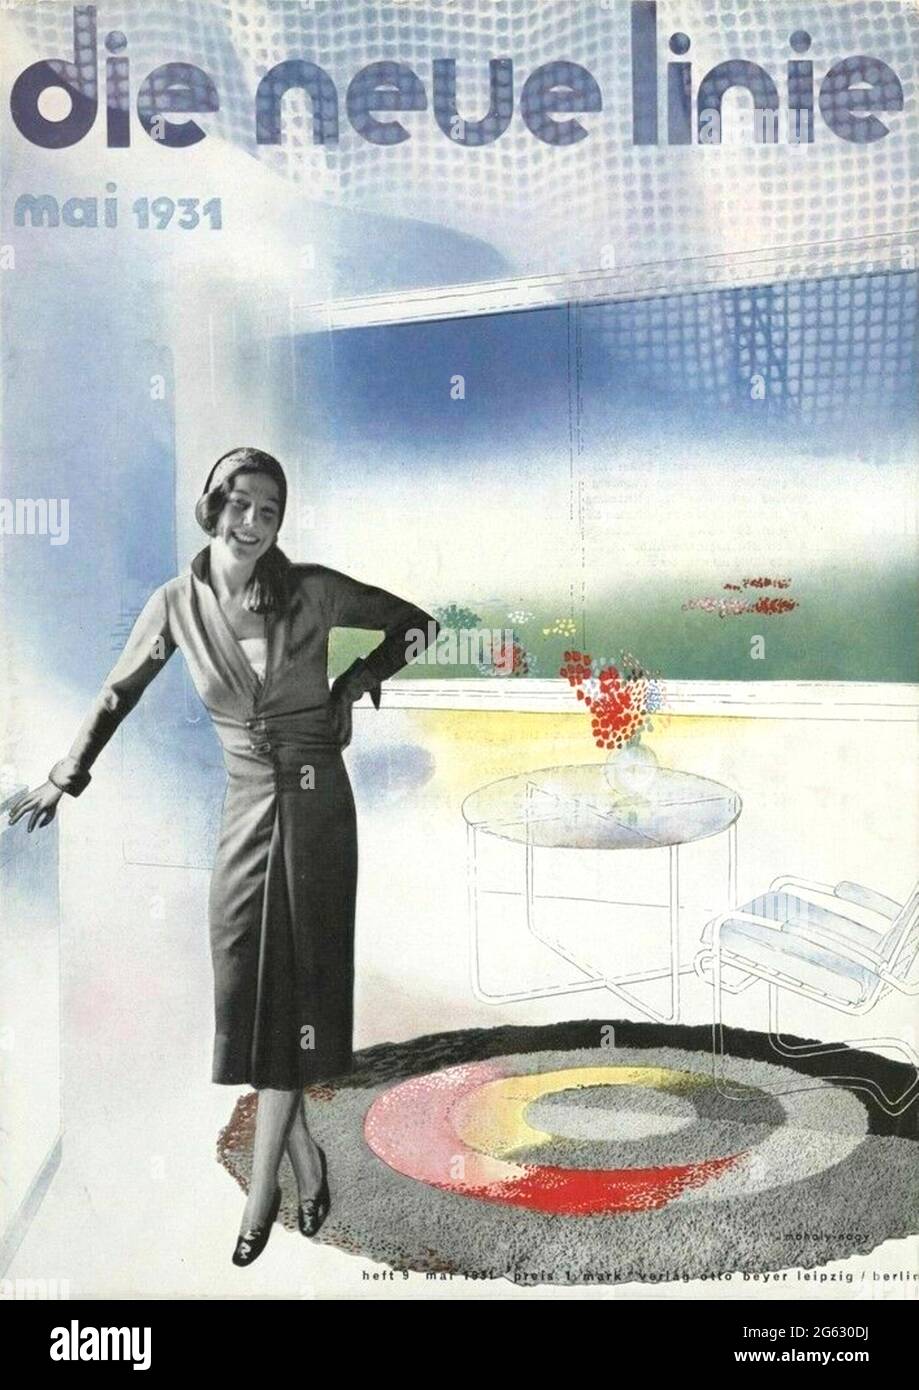 László Moholy-Nagy magazine cover artwork. Stock Photo